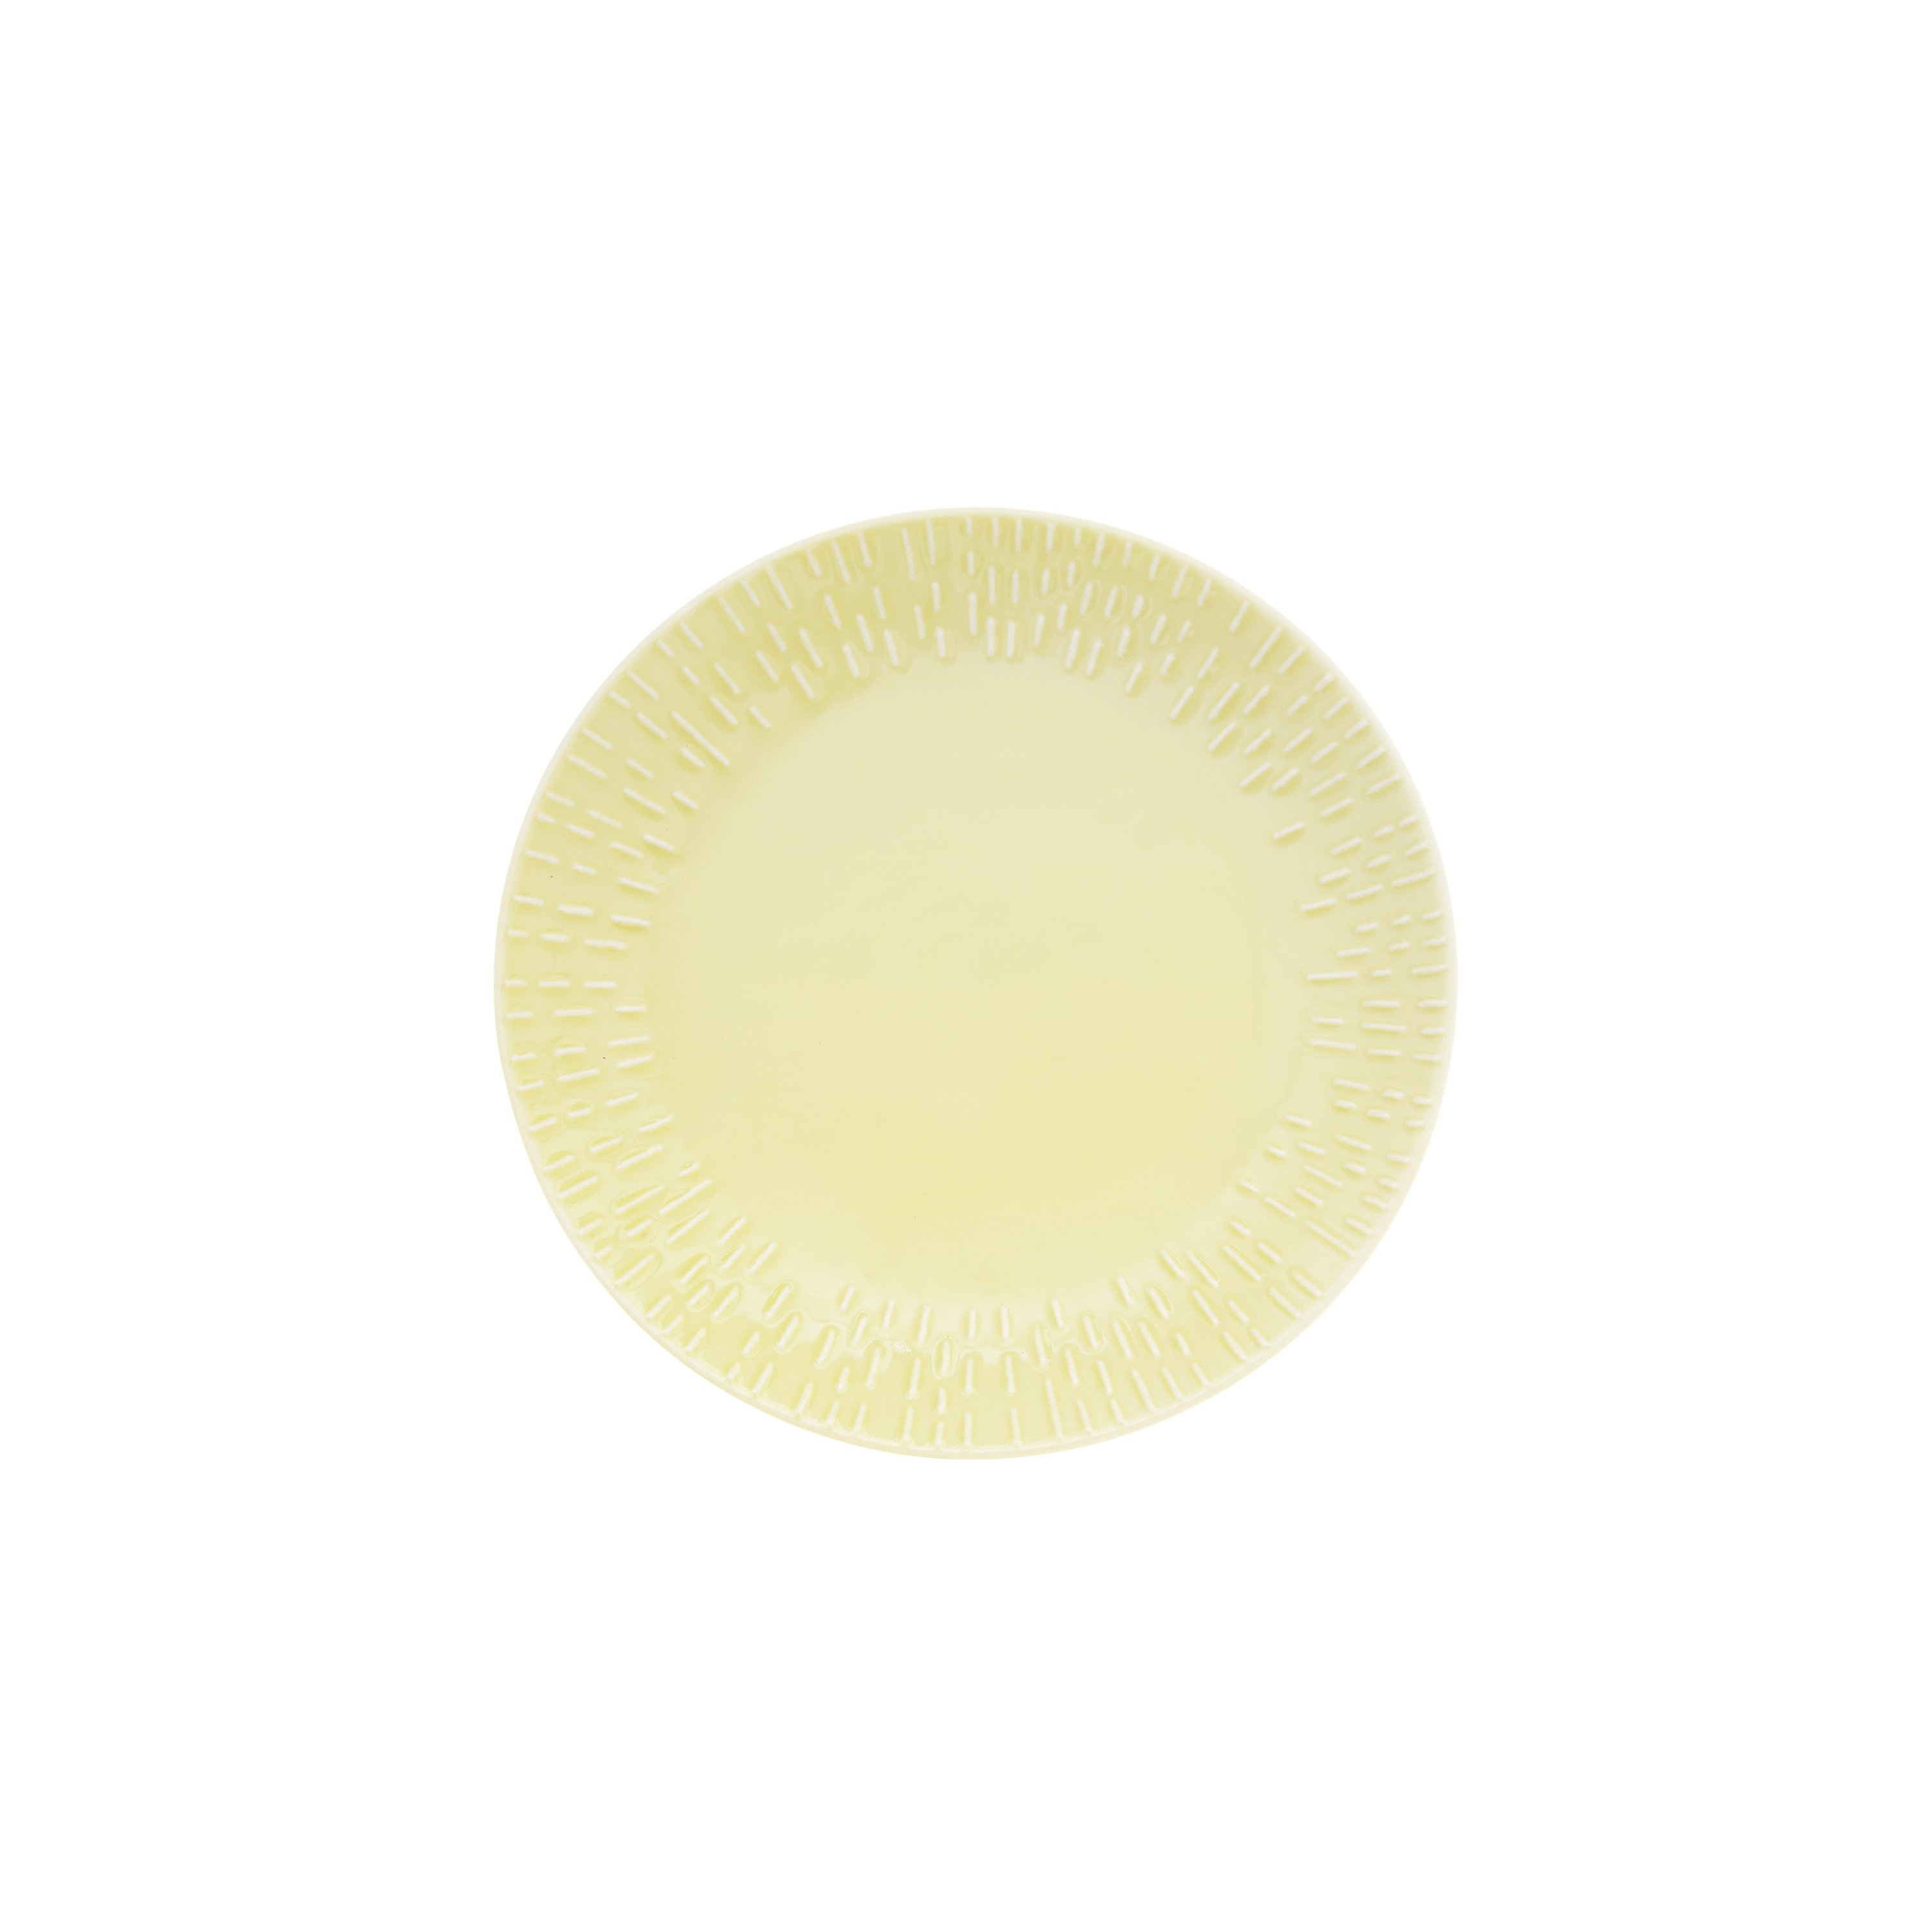 Aida - Life in Colour - Confetti - Lemon dessert plate w/relief porcelain (13302) - Hjemme og kjøkken